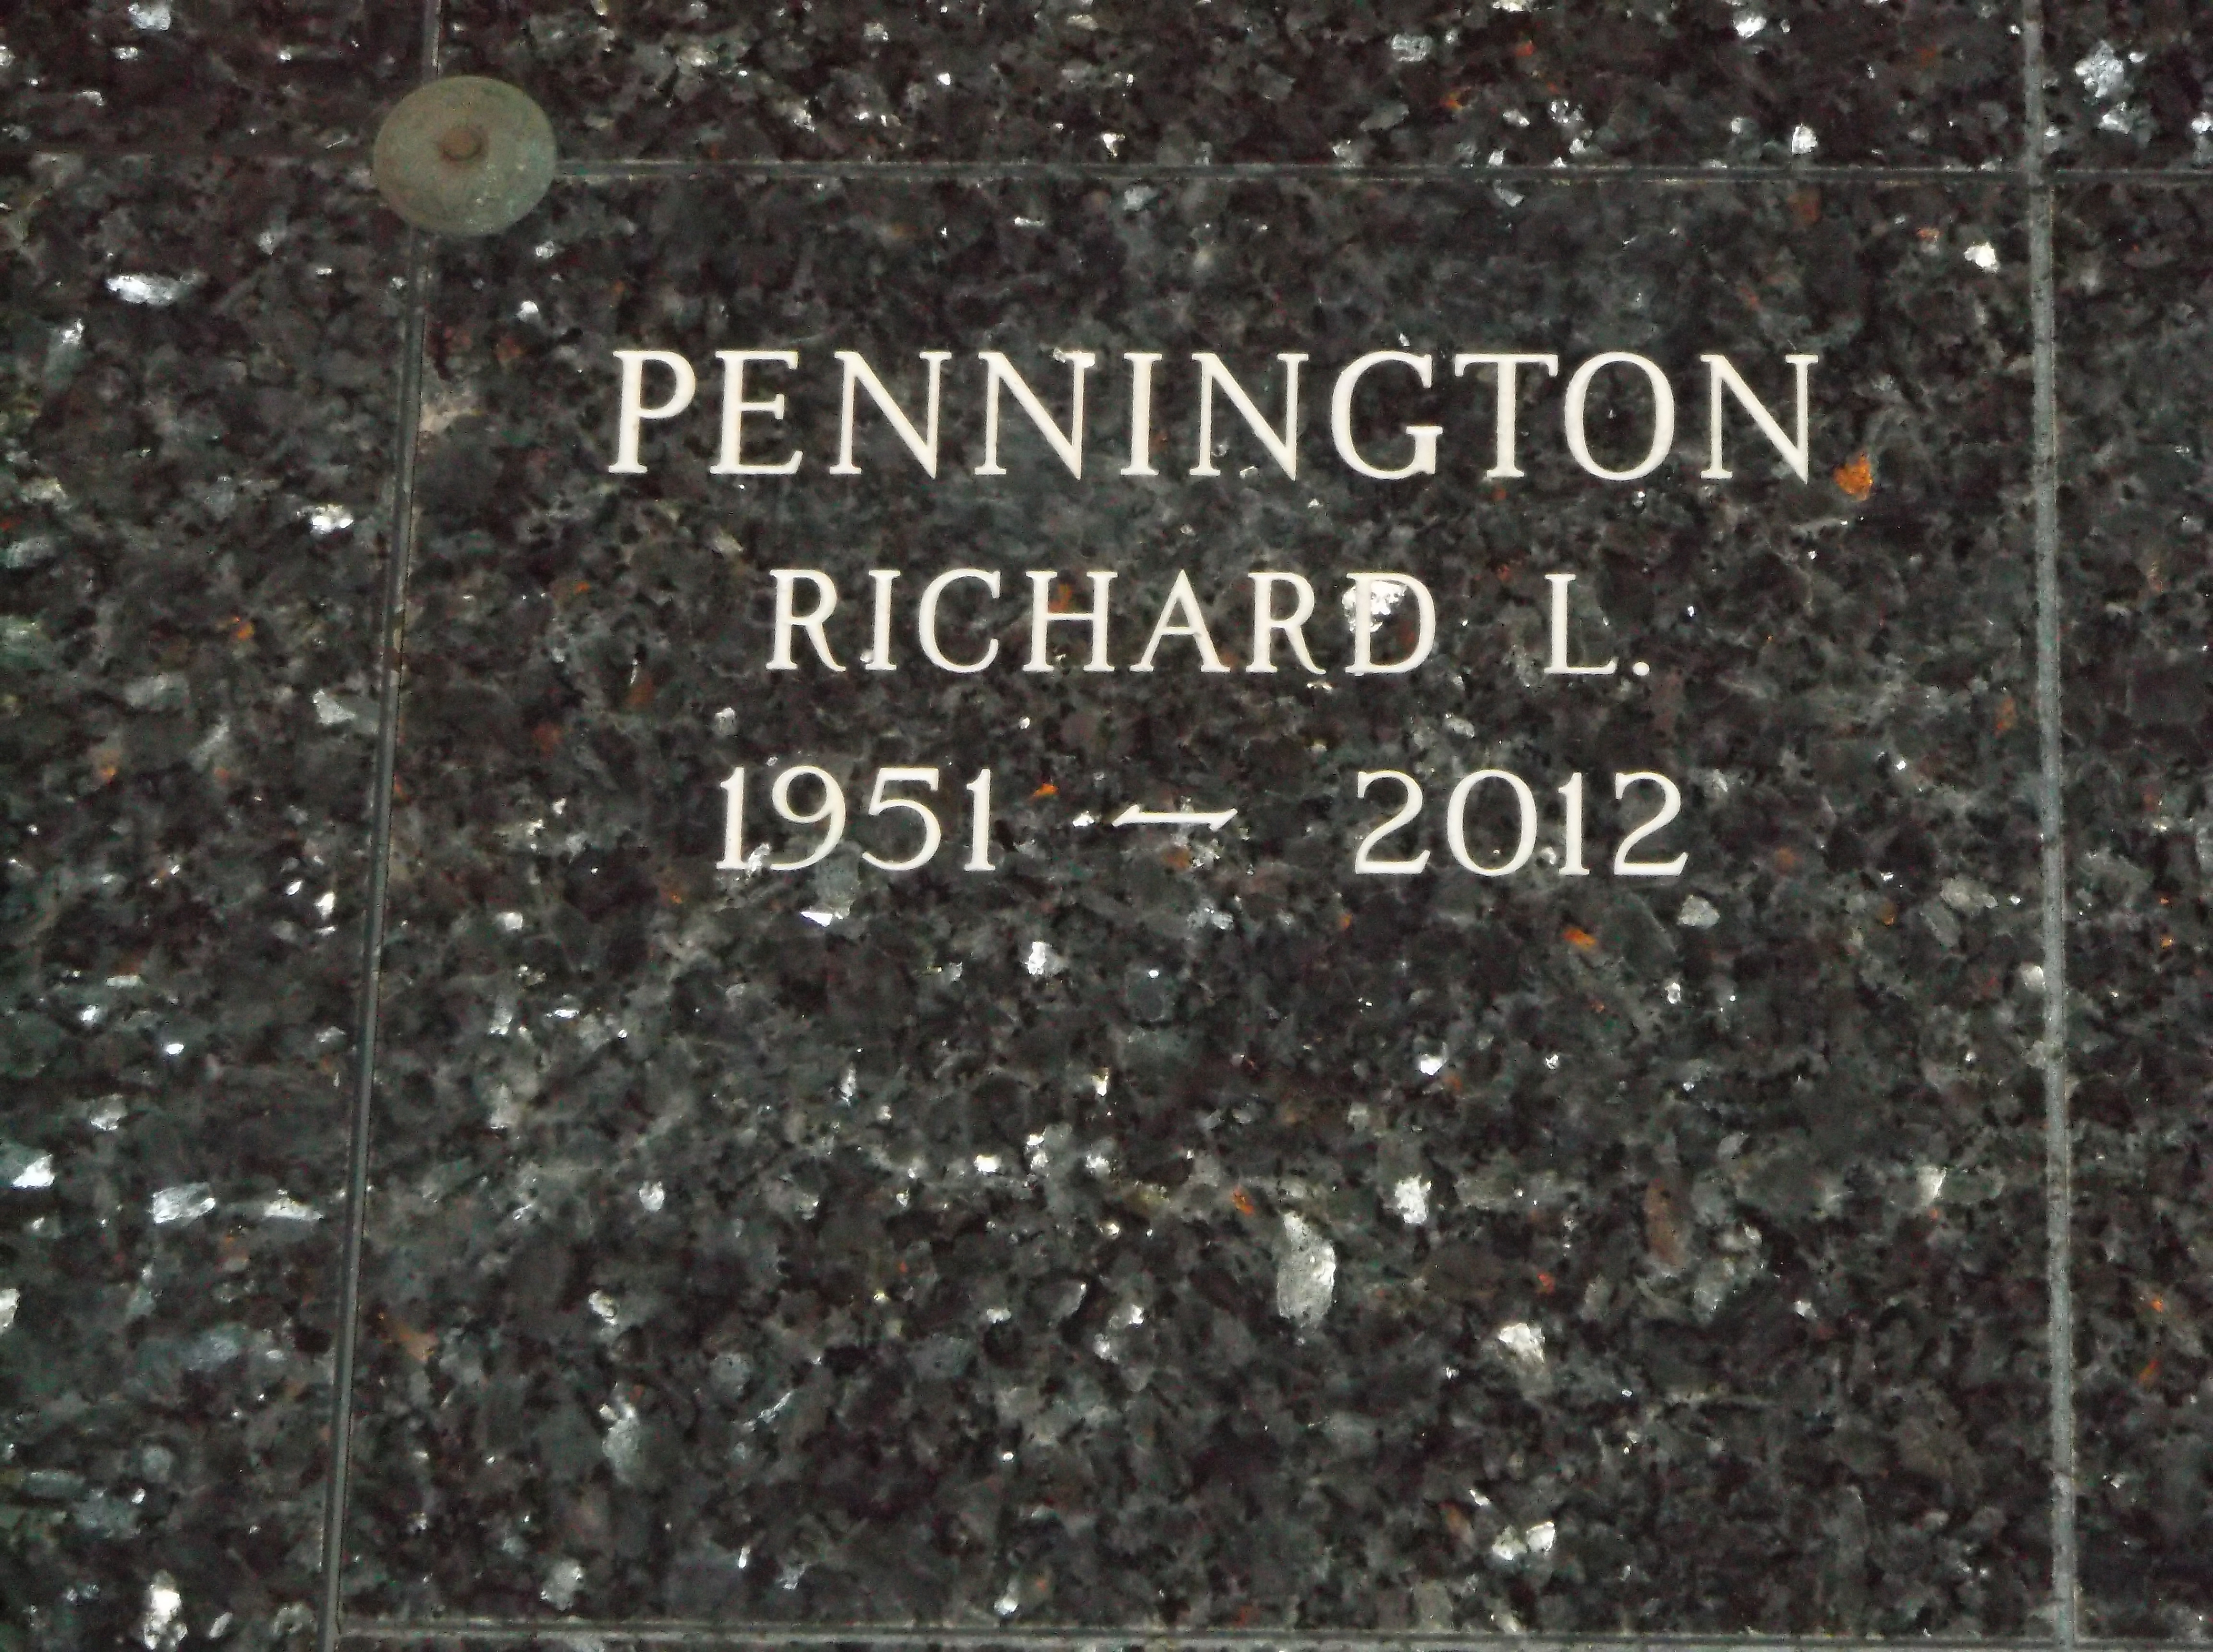 Richard L Pennington